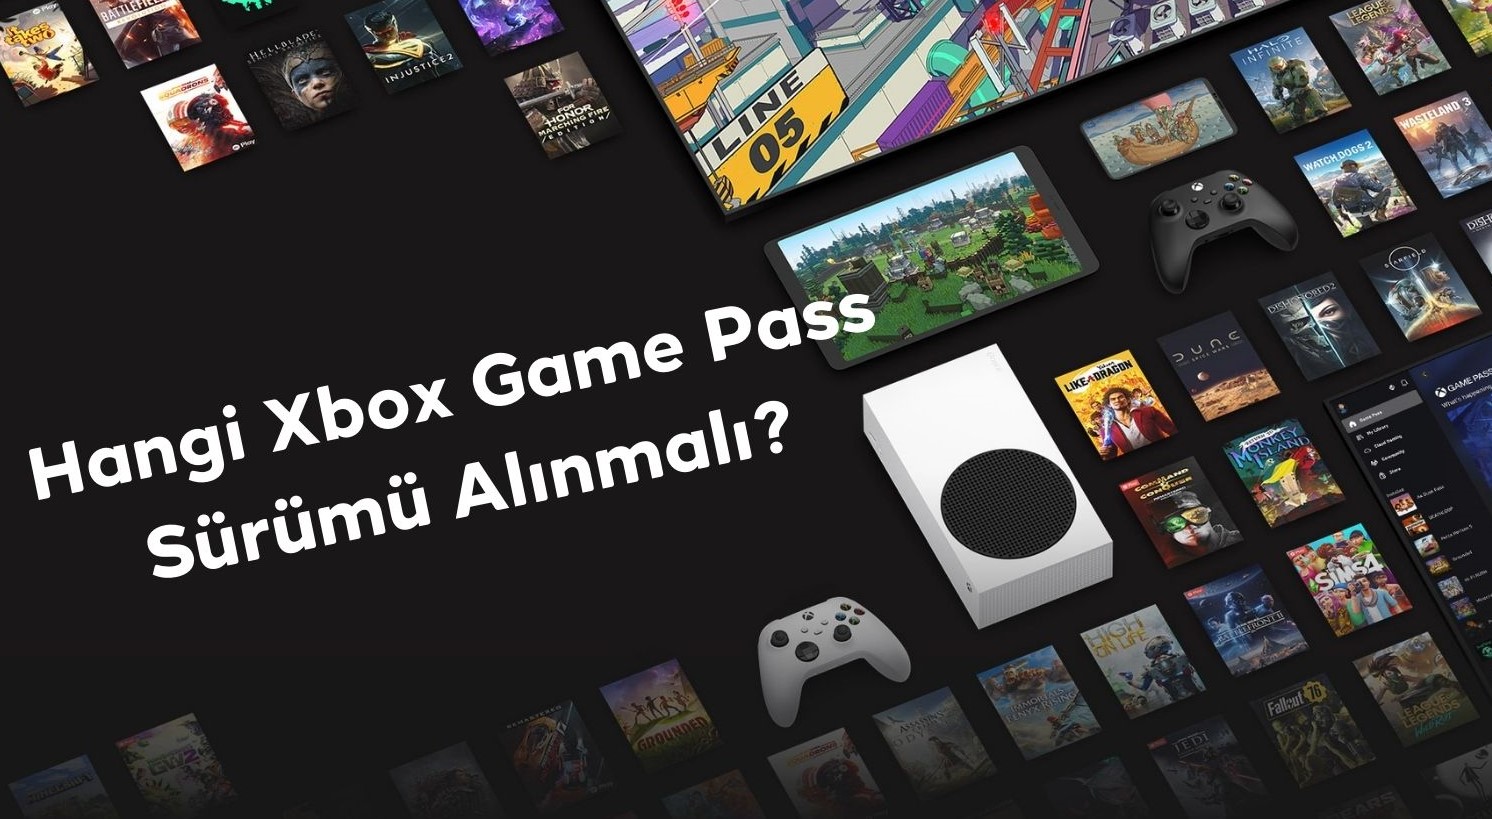 Hangi Xbox Game Pass Sürümü Alınmalı?